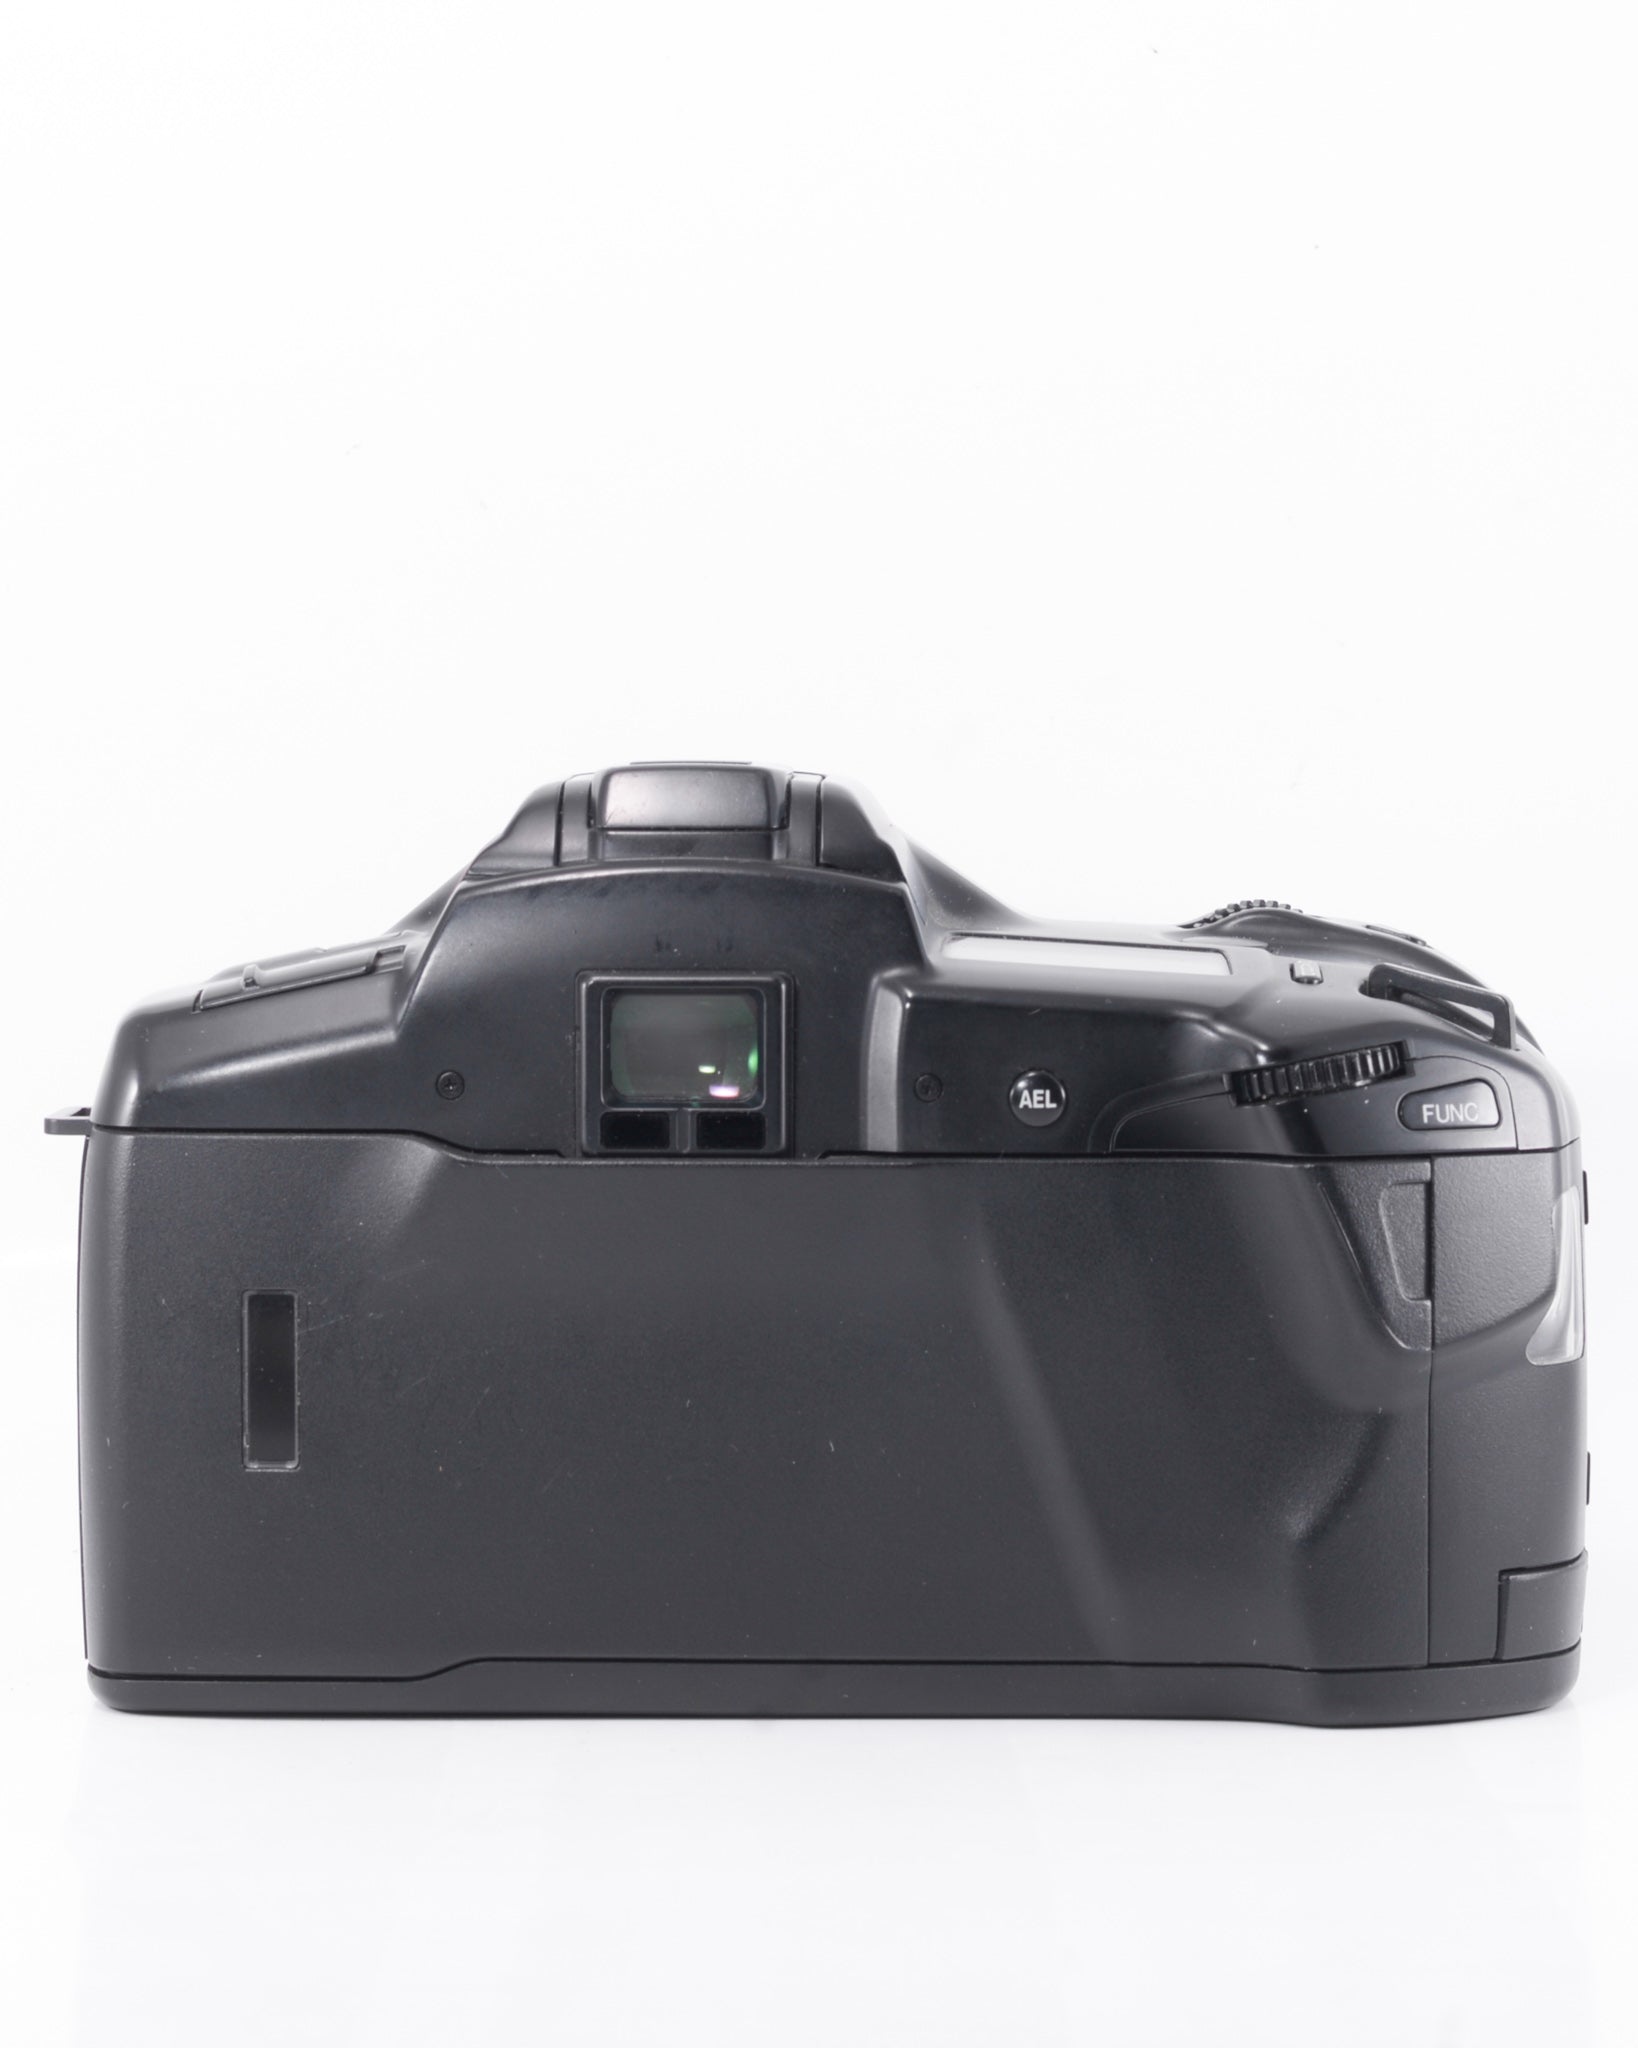 Minolta Dynax 7xi 35mm SLR film camera with 28-105mm zoom lens